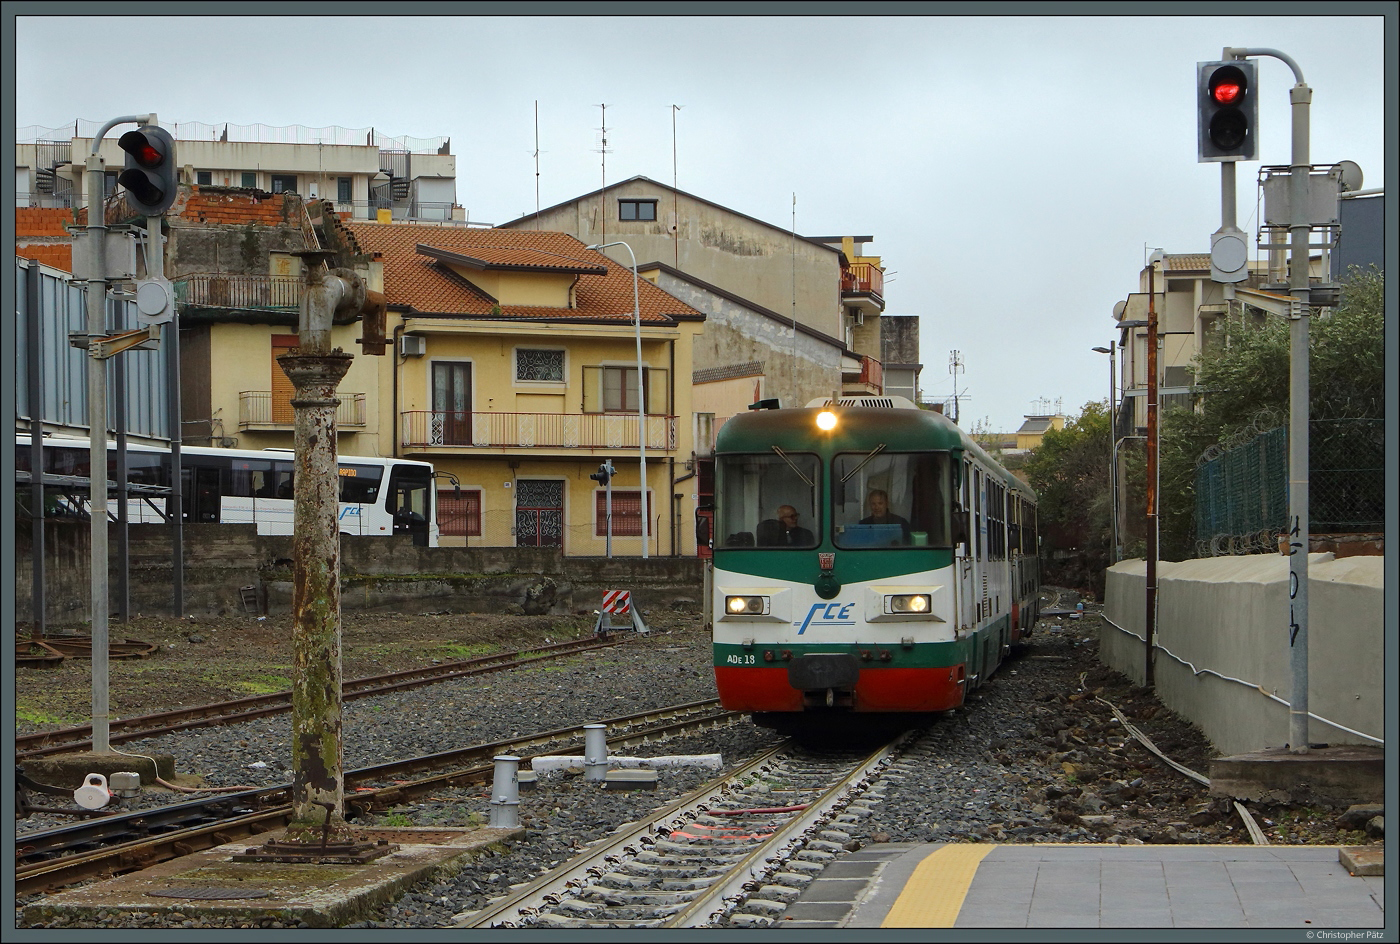 ADe 18 der FCE fährt am 28.02.2024 in Paternò ein. Links ist ein Bus der FCE zu sehen, diese verkehren vielfach parallel zur Bahn.